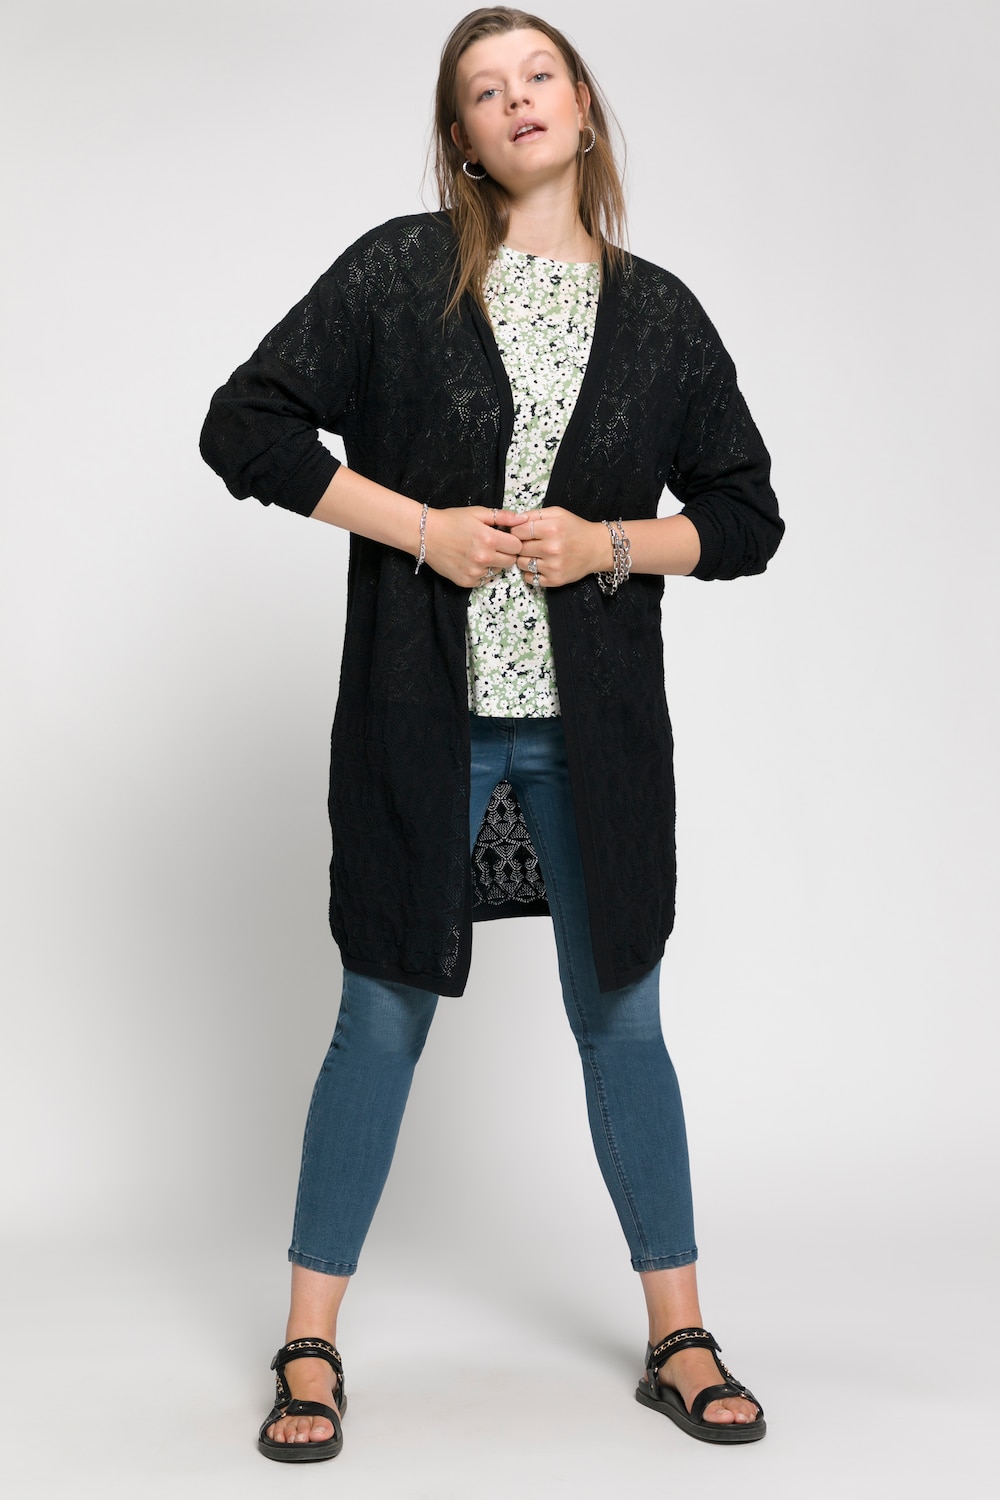 Plus Size Soft Textured Knit Long Cardigan, Woman, black, size: 16/18, cotton, Studio Untold